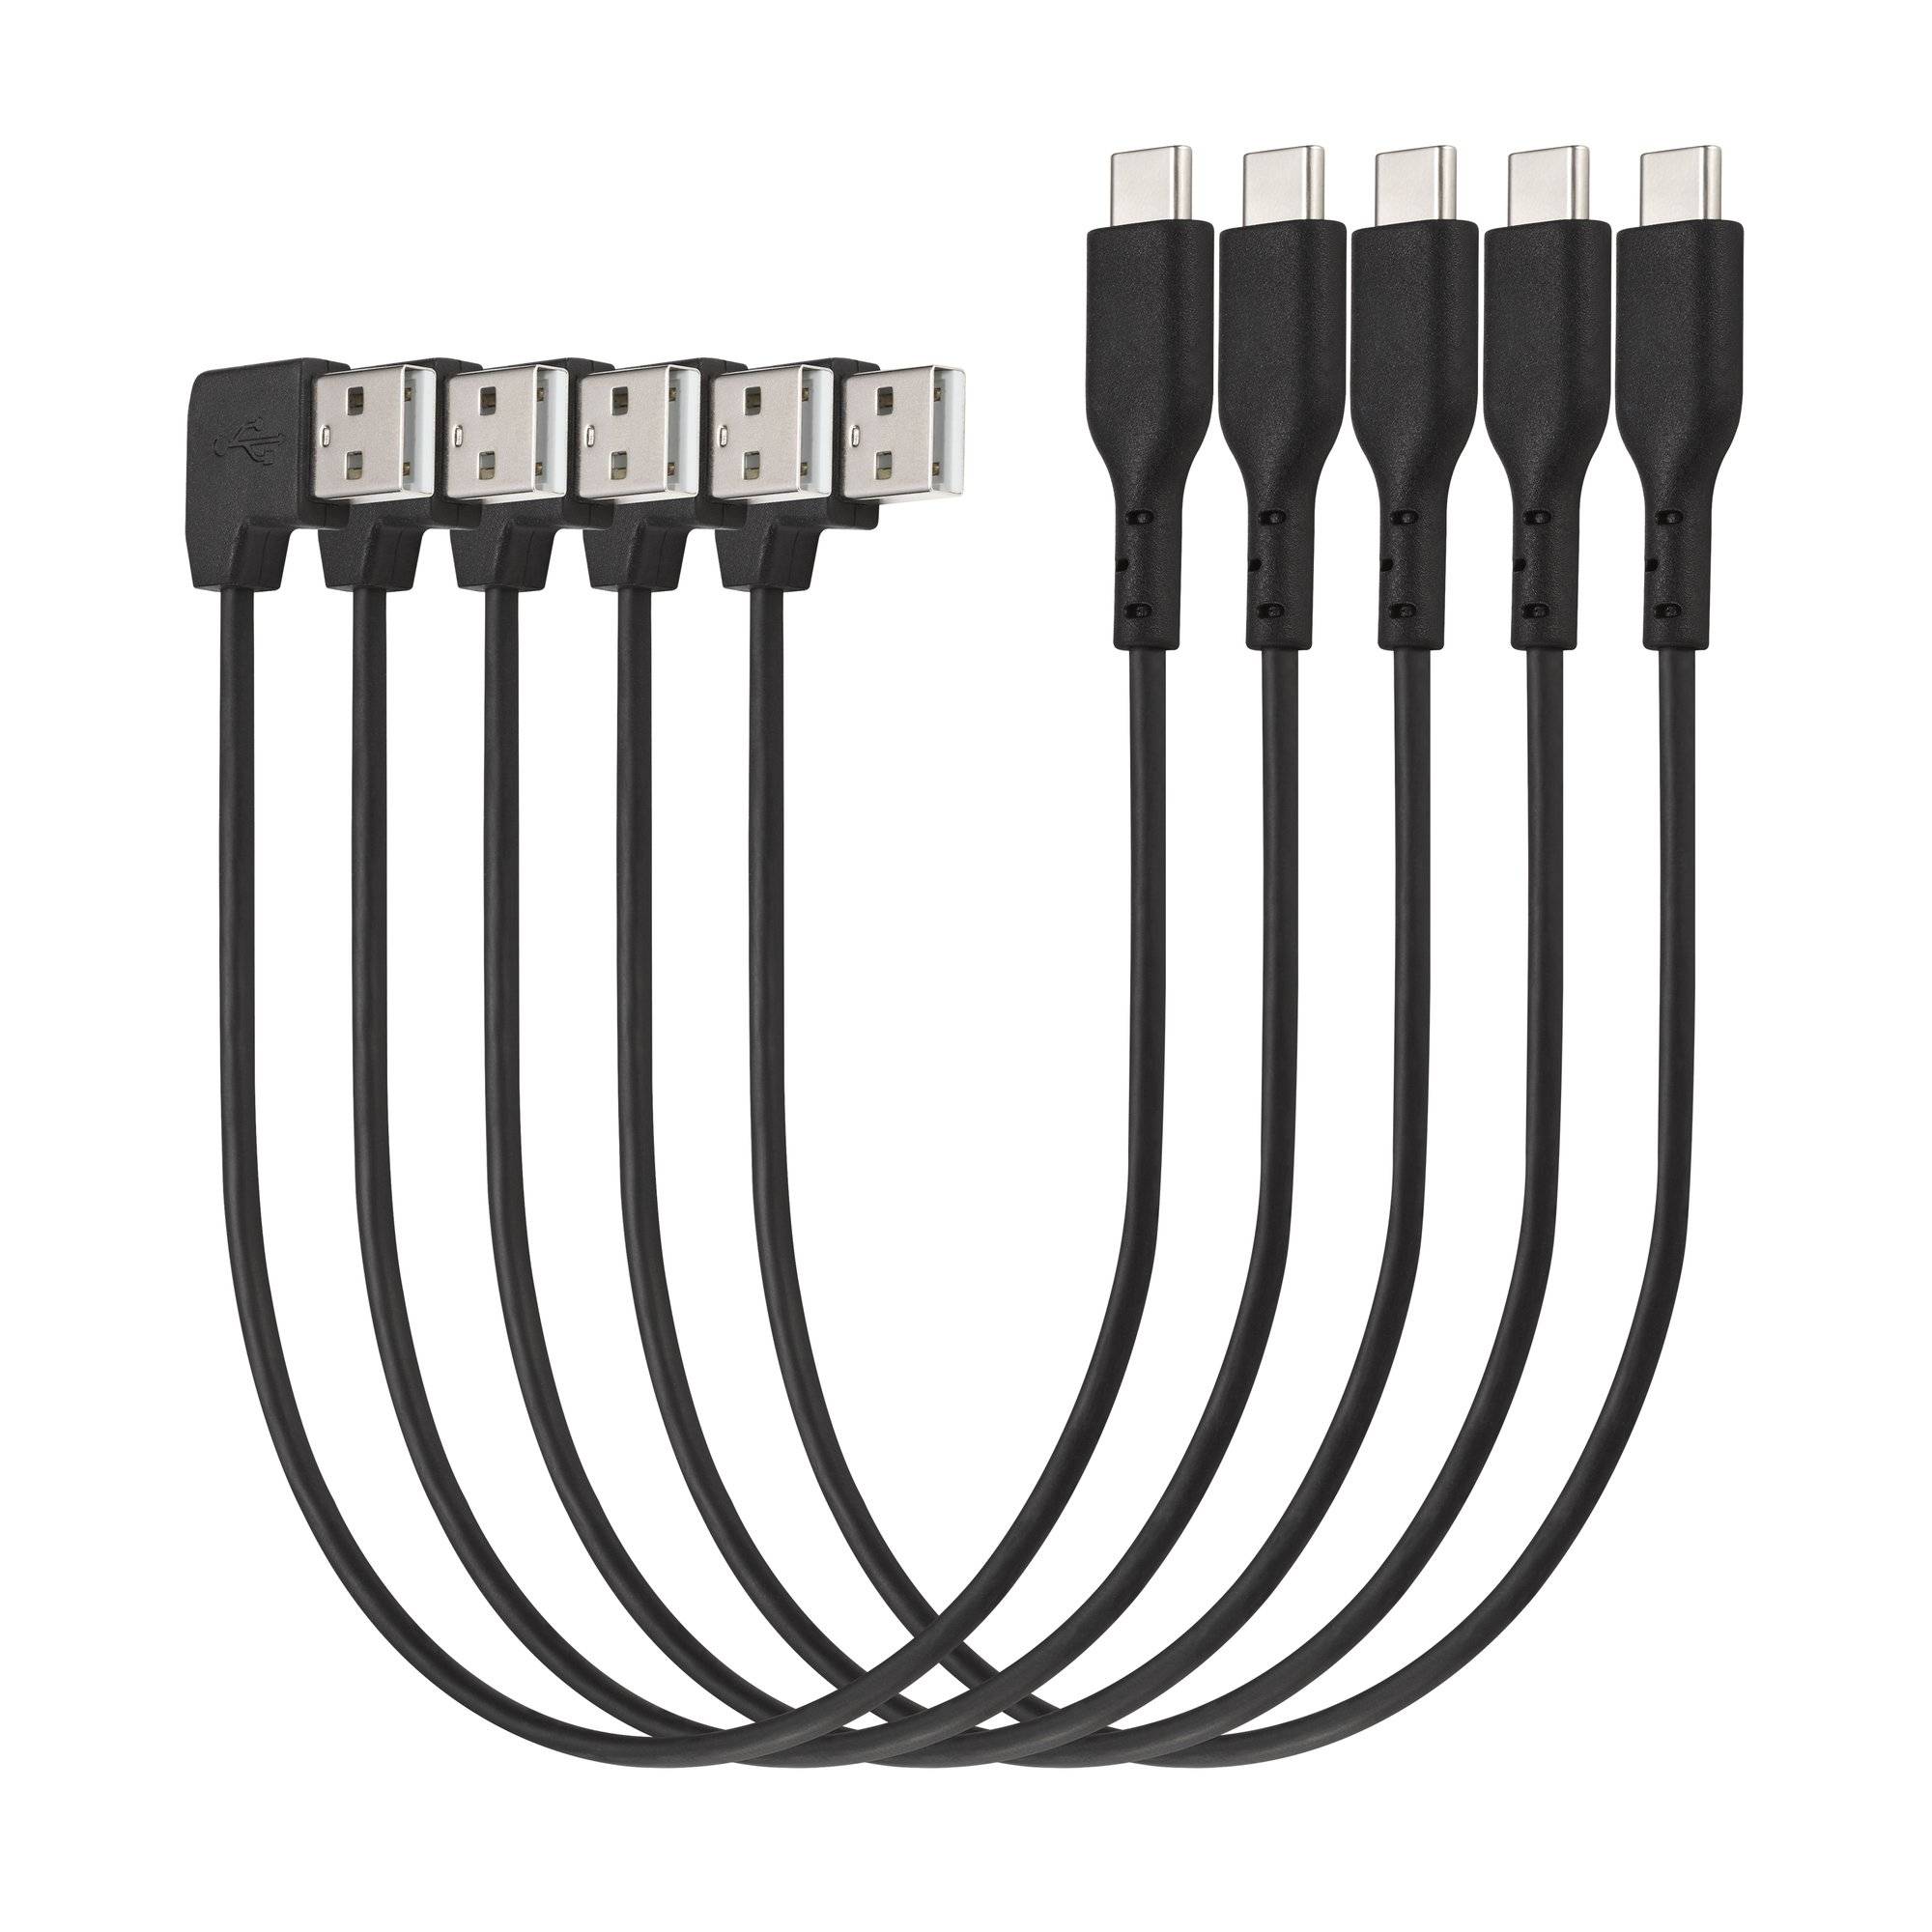 Rca Informatique - Image du produit : CHARGE / SYNC USB-A TO USB-C CABLE (5 PACK)